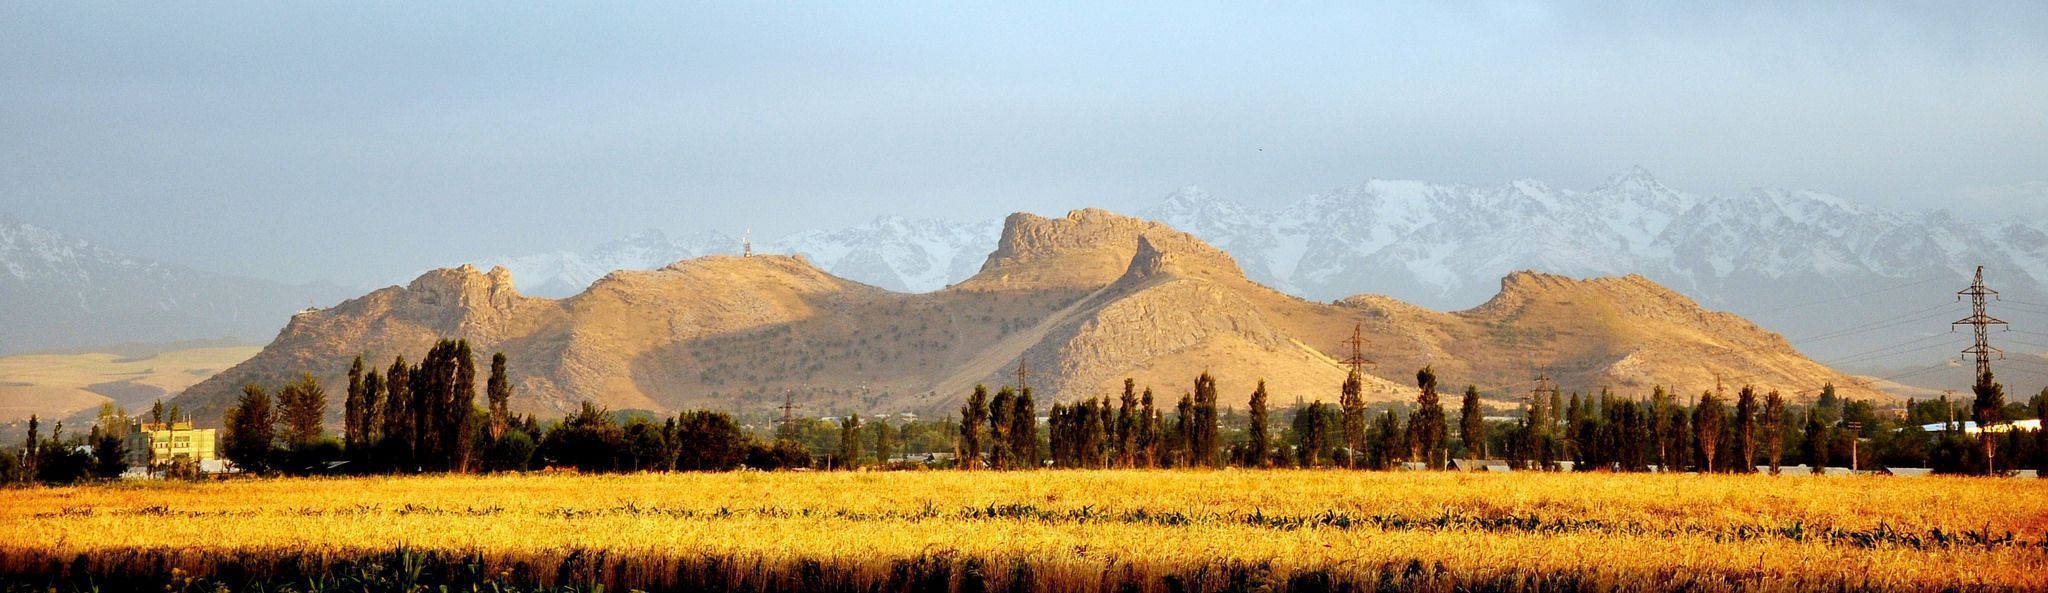 Gora sulajman too - Достопримечательности Киргизии. Отдых в 2022